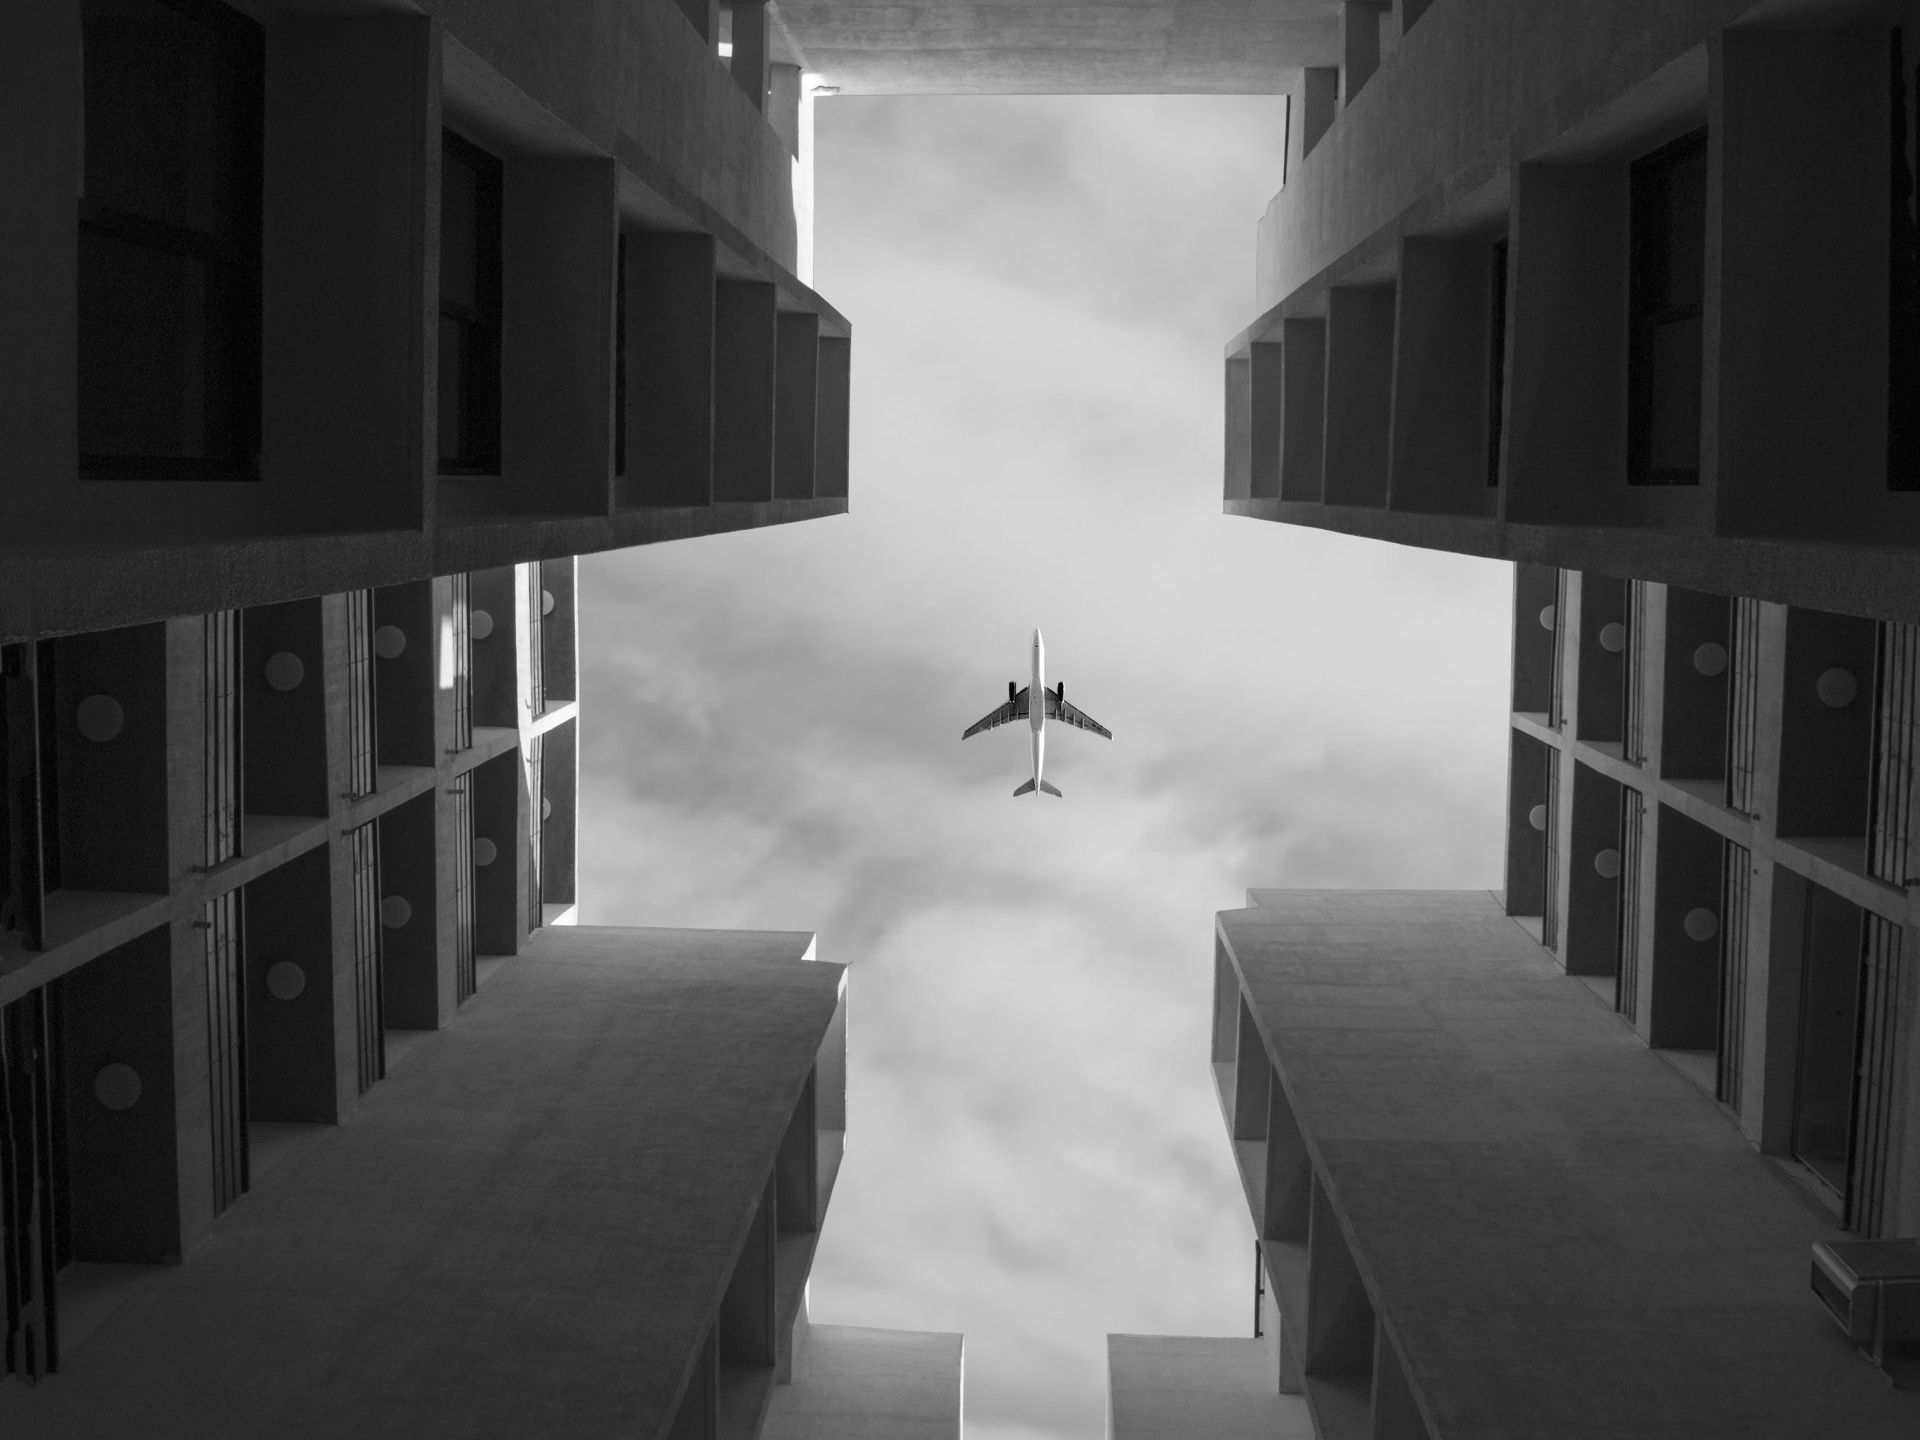 un avion vole dans le ciel entre deux bâtiments